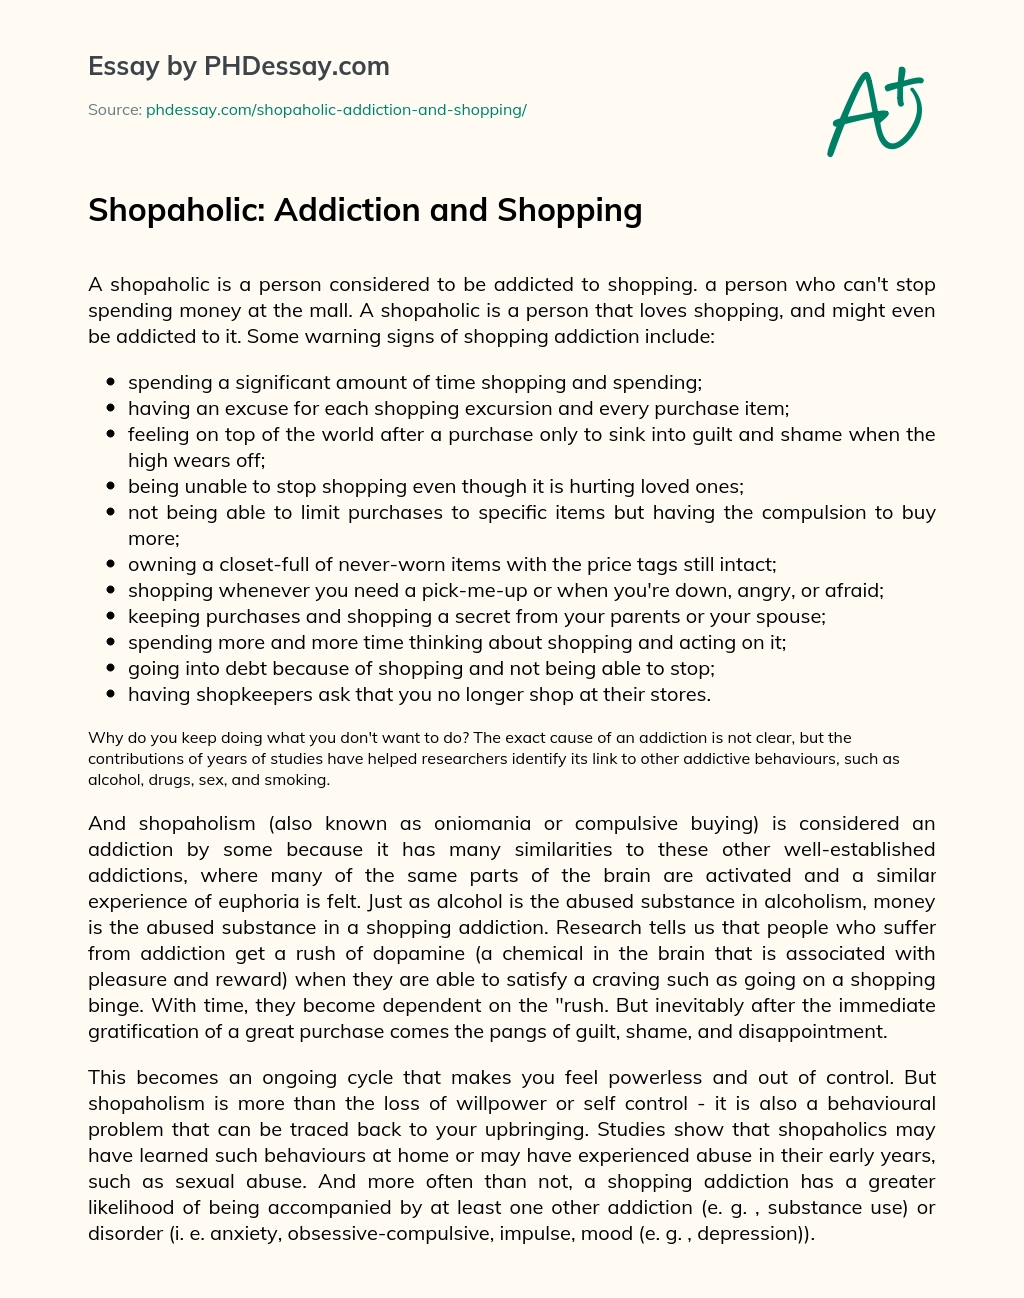 Shopaholic: Addiction and Shopping essay